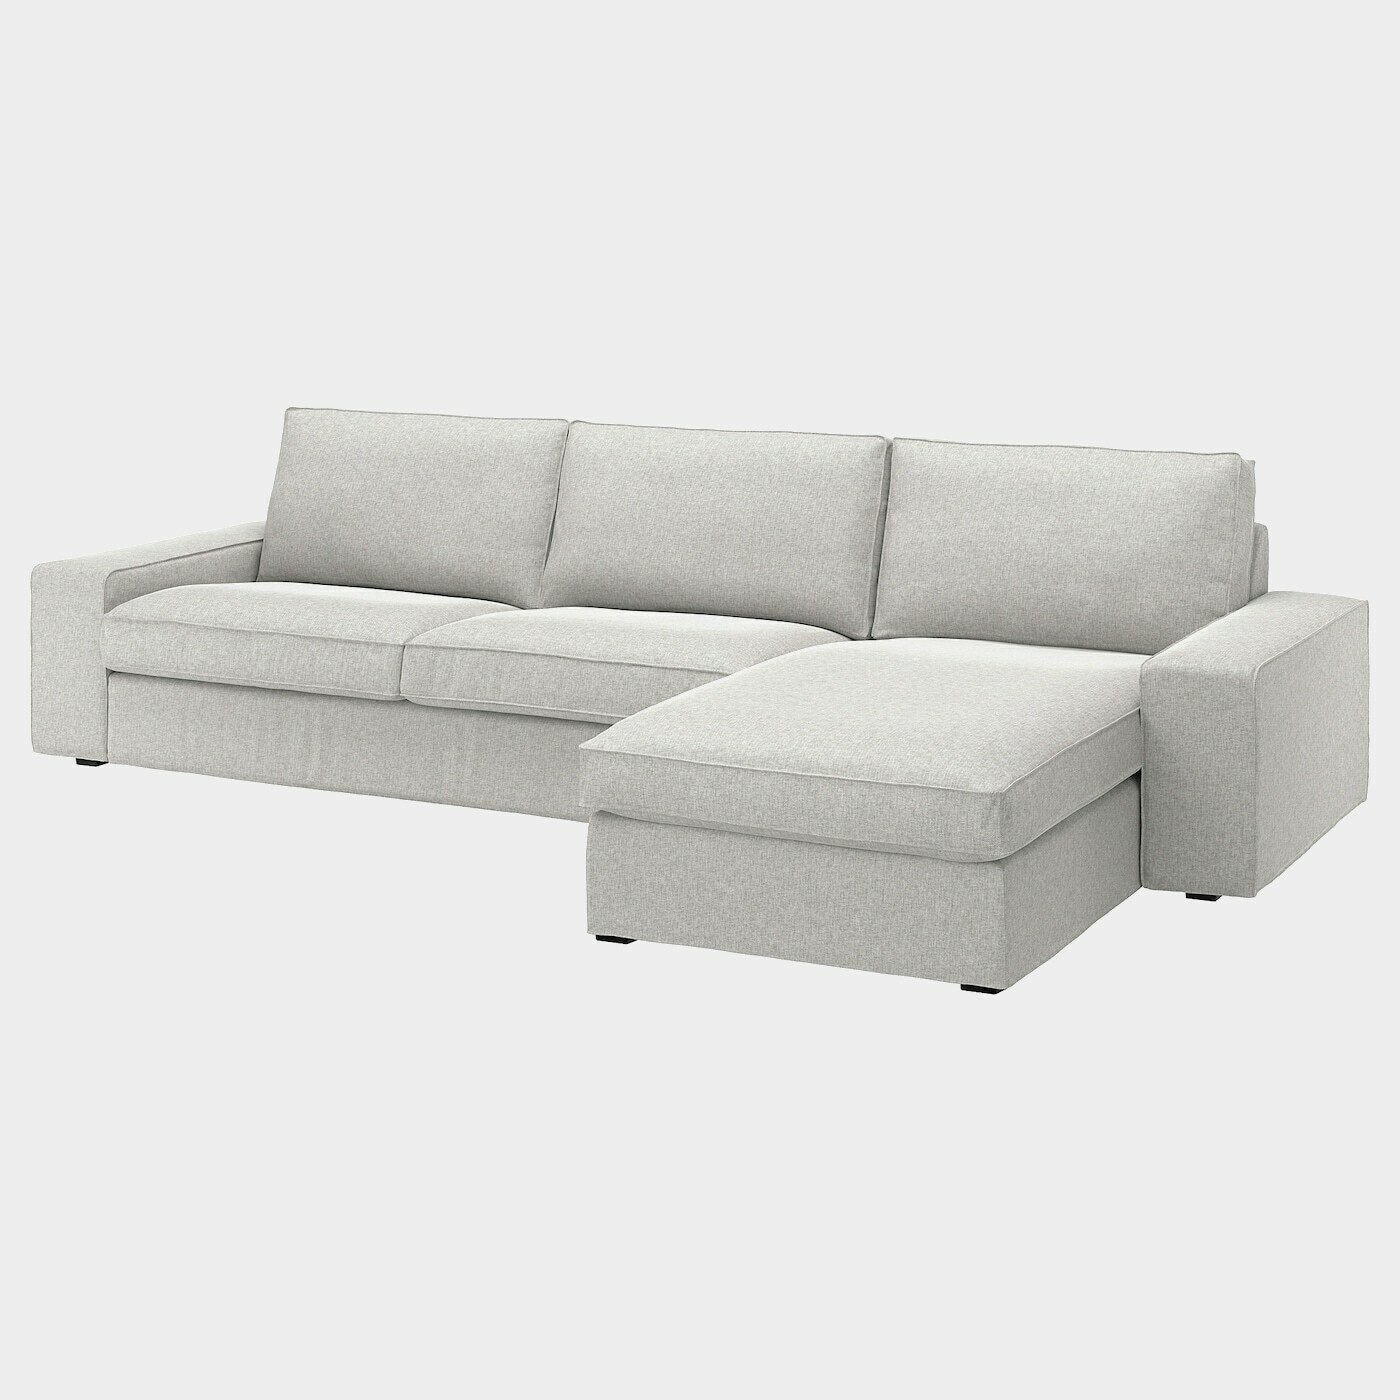 KIVIK 4er-Sofa mit Récamiere  -  - Möbel Ideen für dein Zuhause von Home Trends. Möbel Trends von Social Media Influencer für dein Skandi Zuhause.